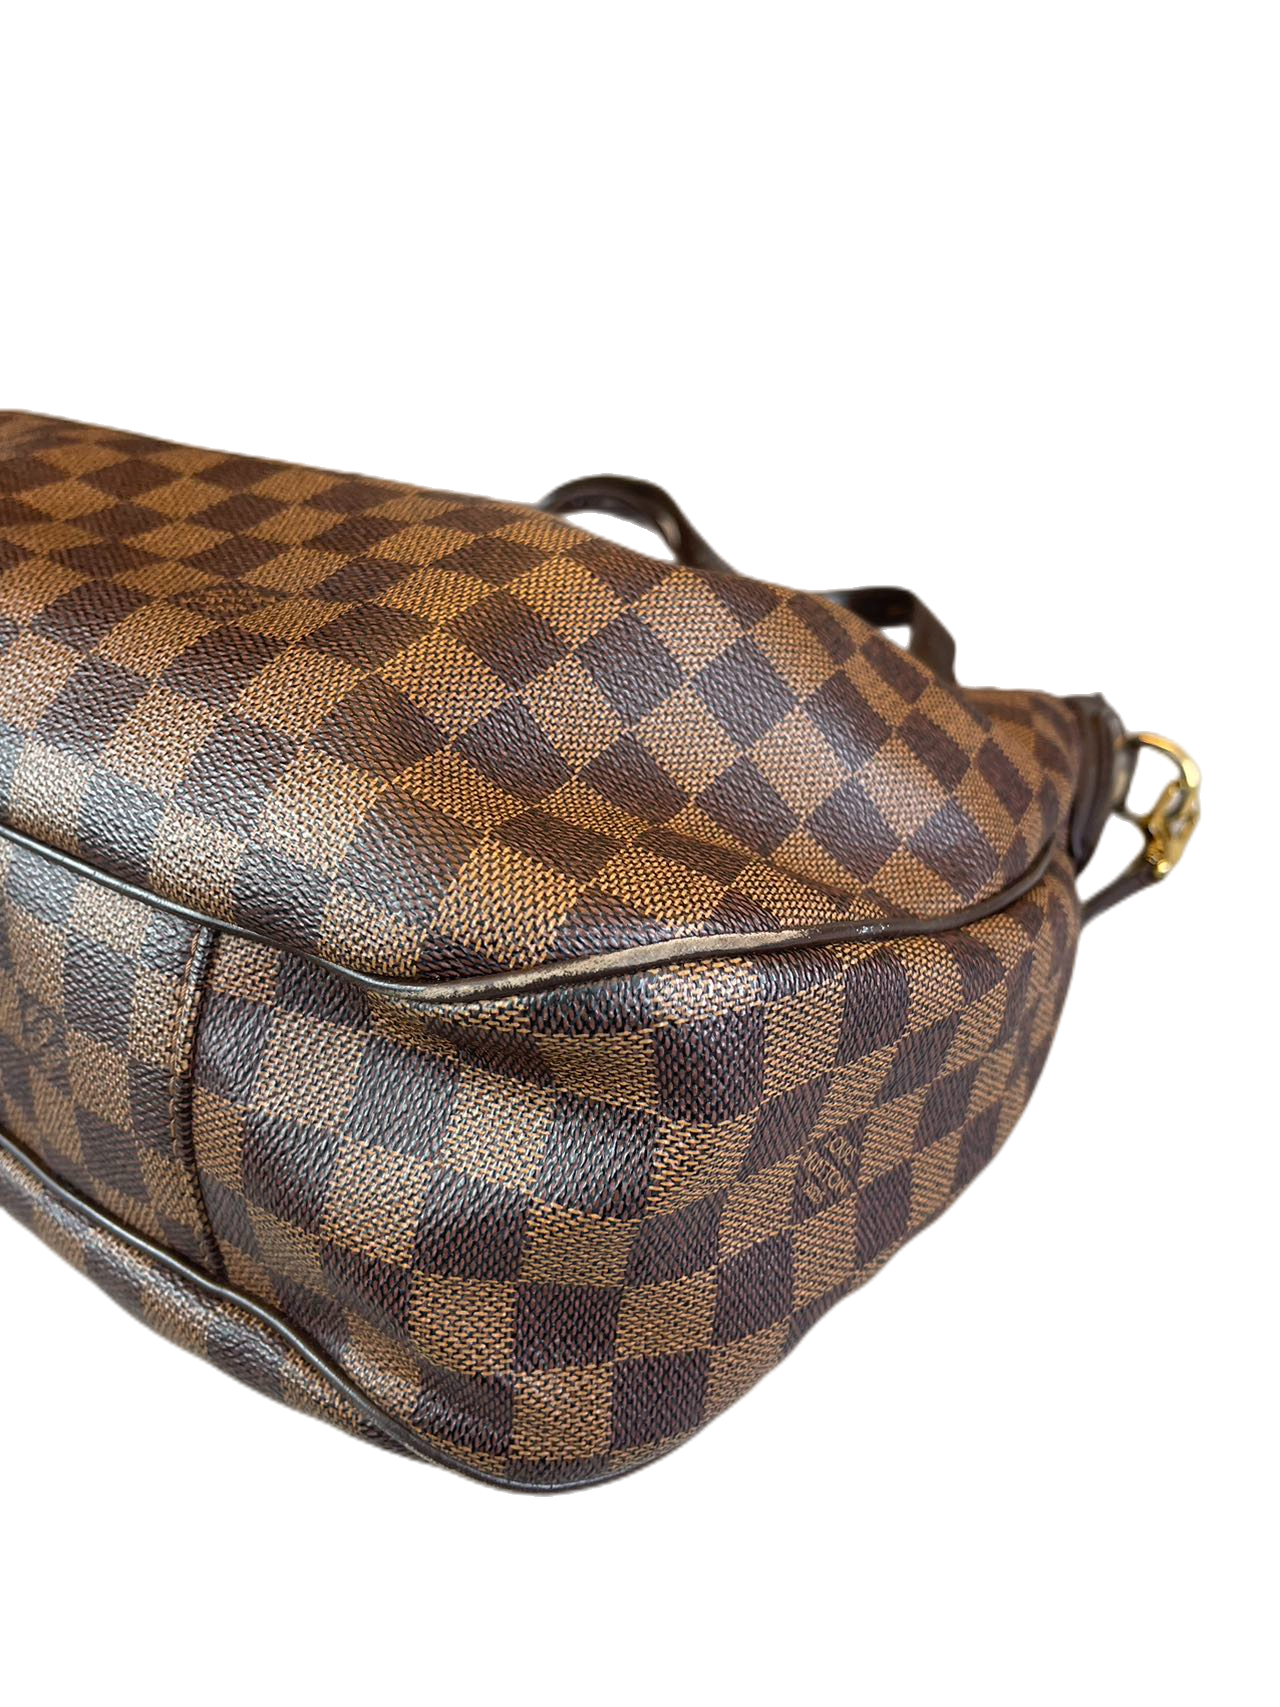 Preloved Louis Vuitton Damier Ebene Evora Shoulder Bag